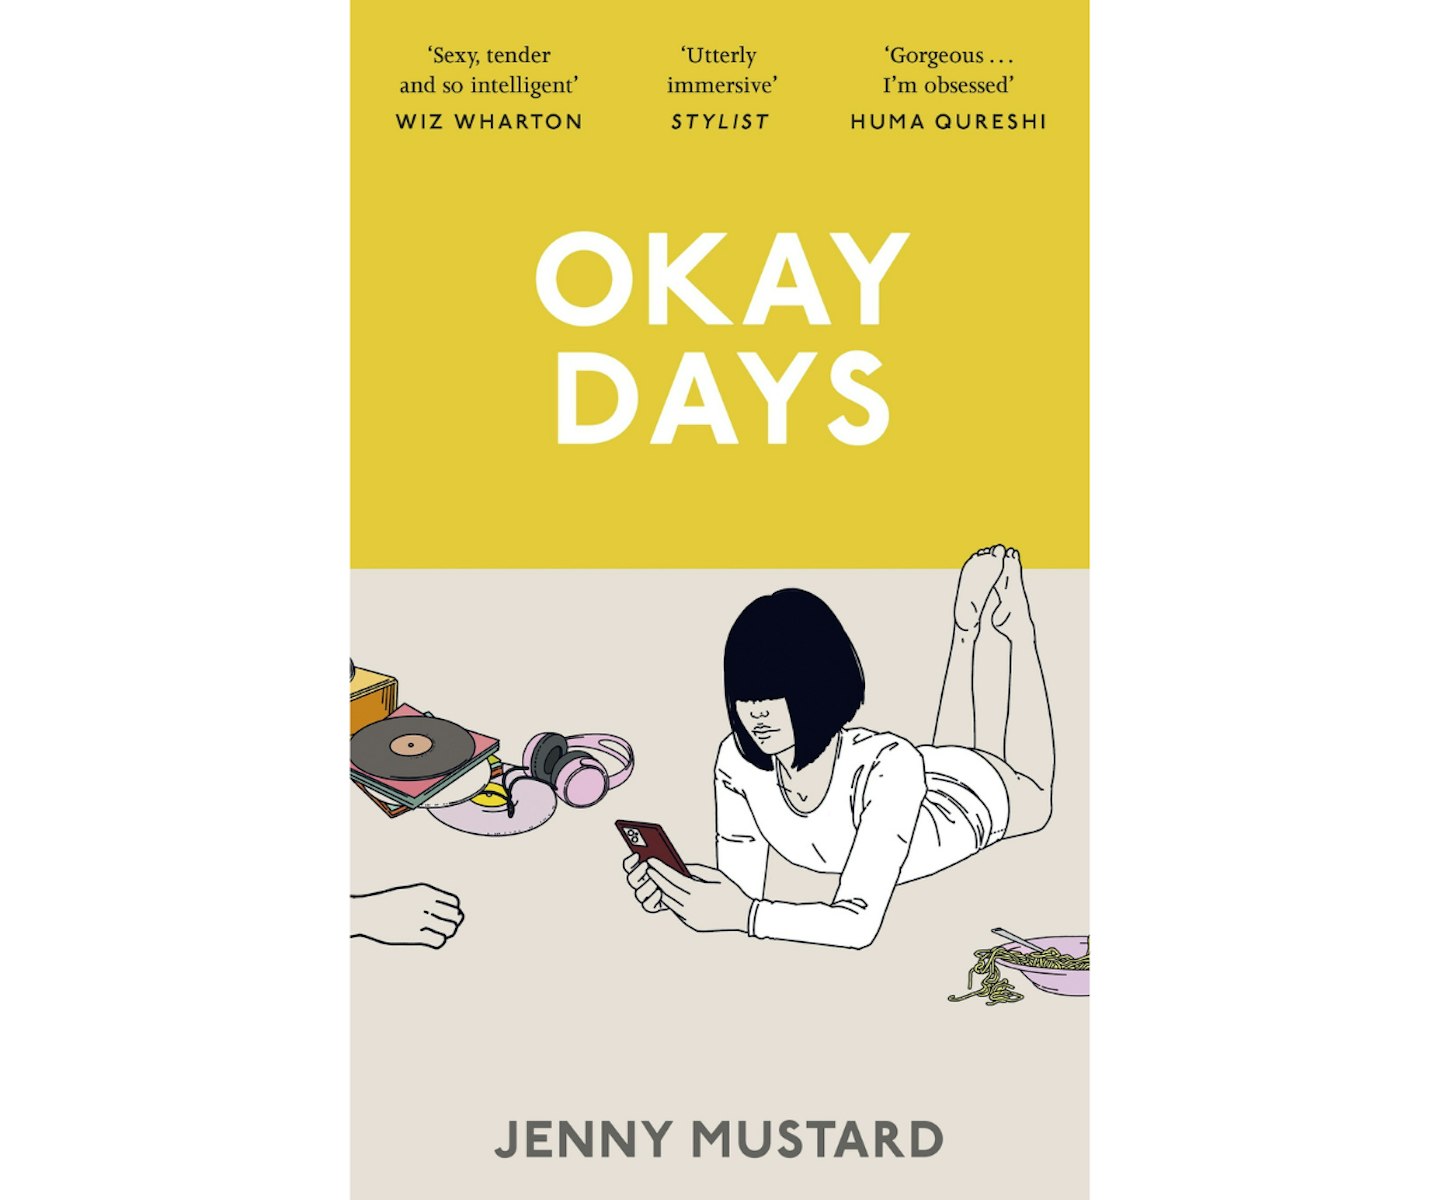 Okay Days by Jenny Mustard